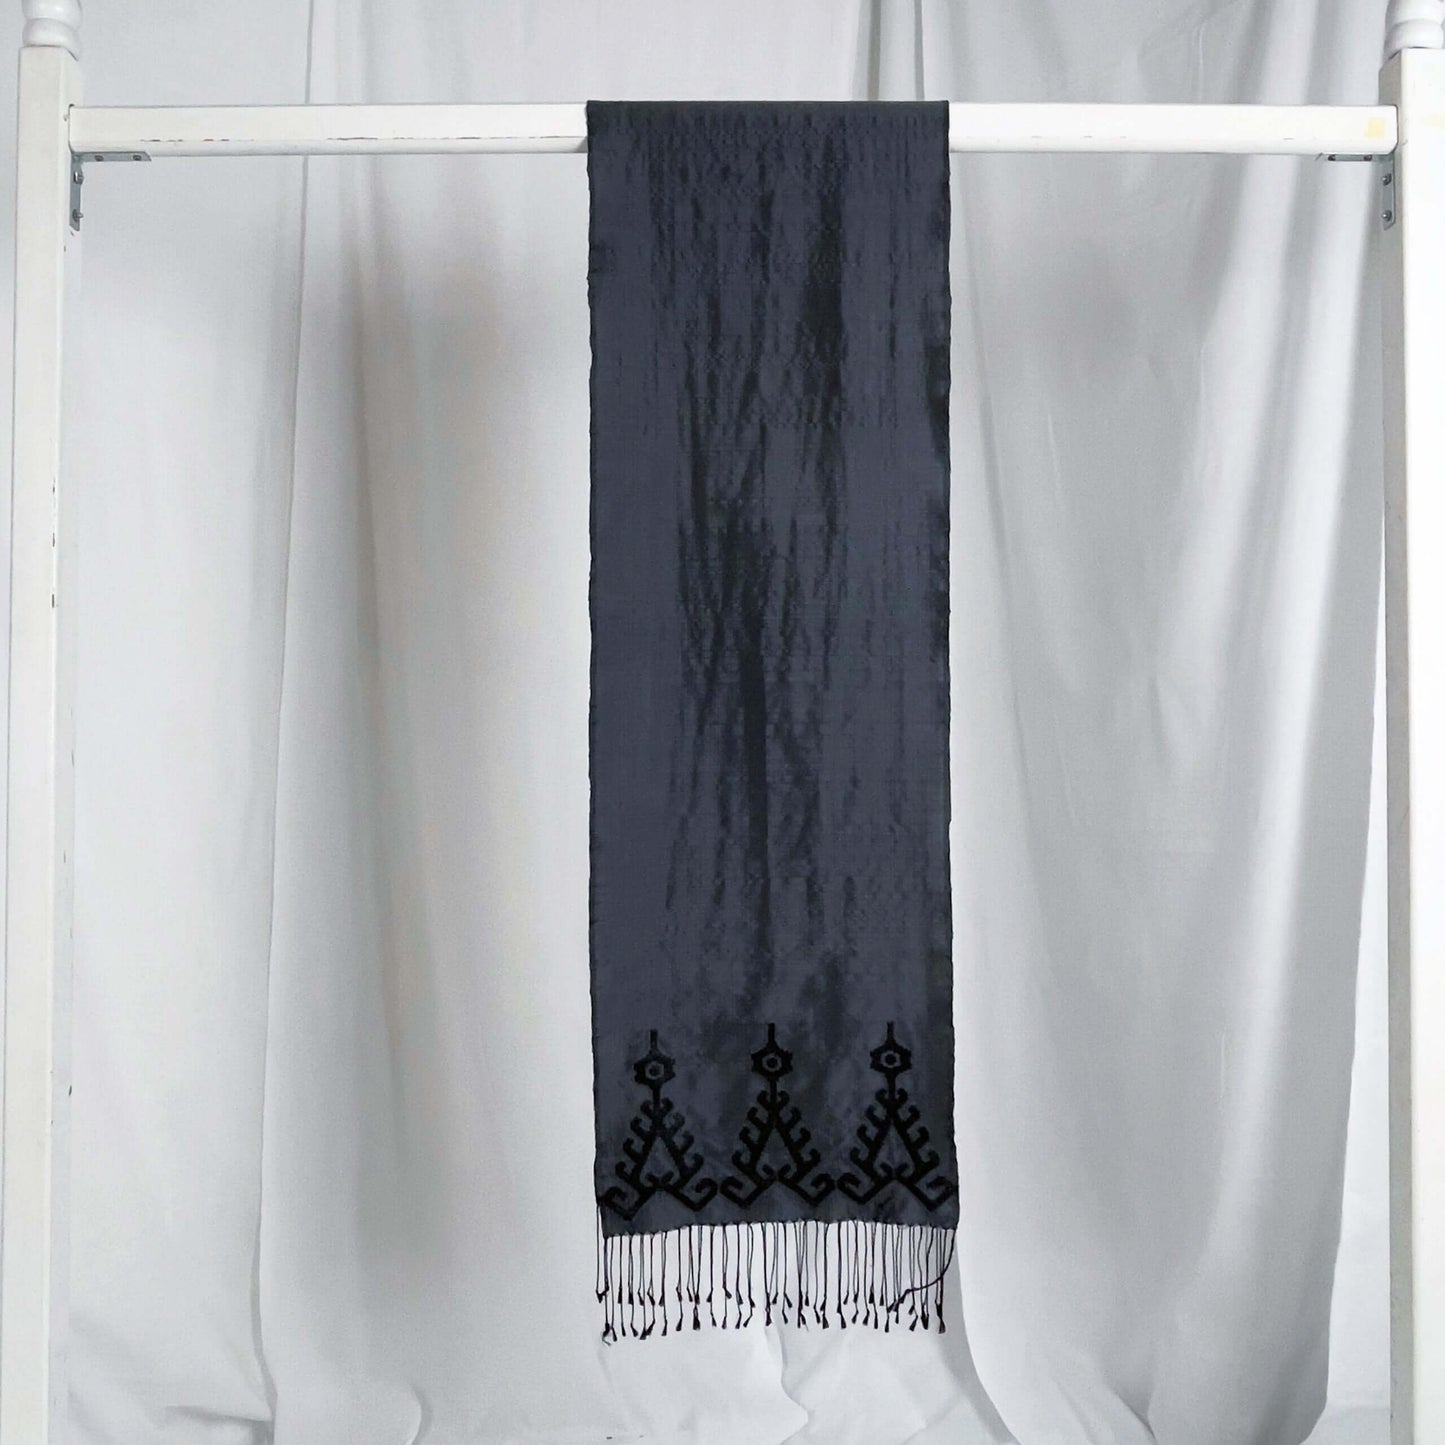 Iban Rebung (Grey) handwoven silk songket shawl textile